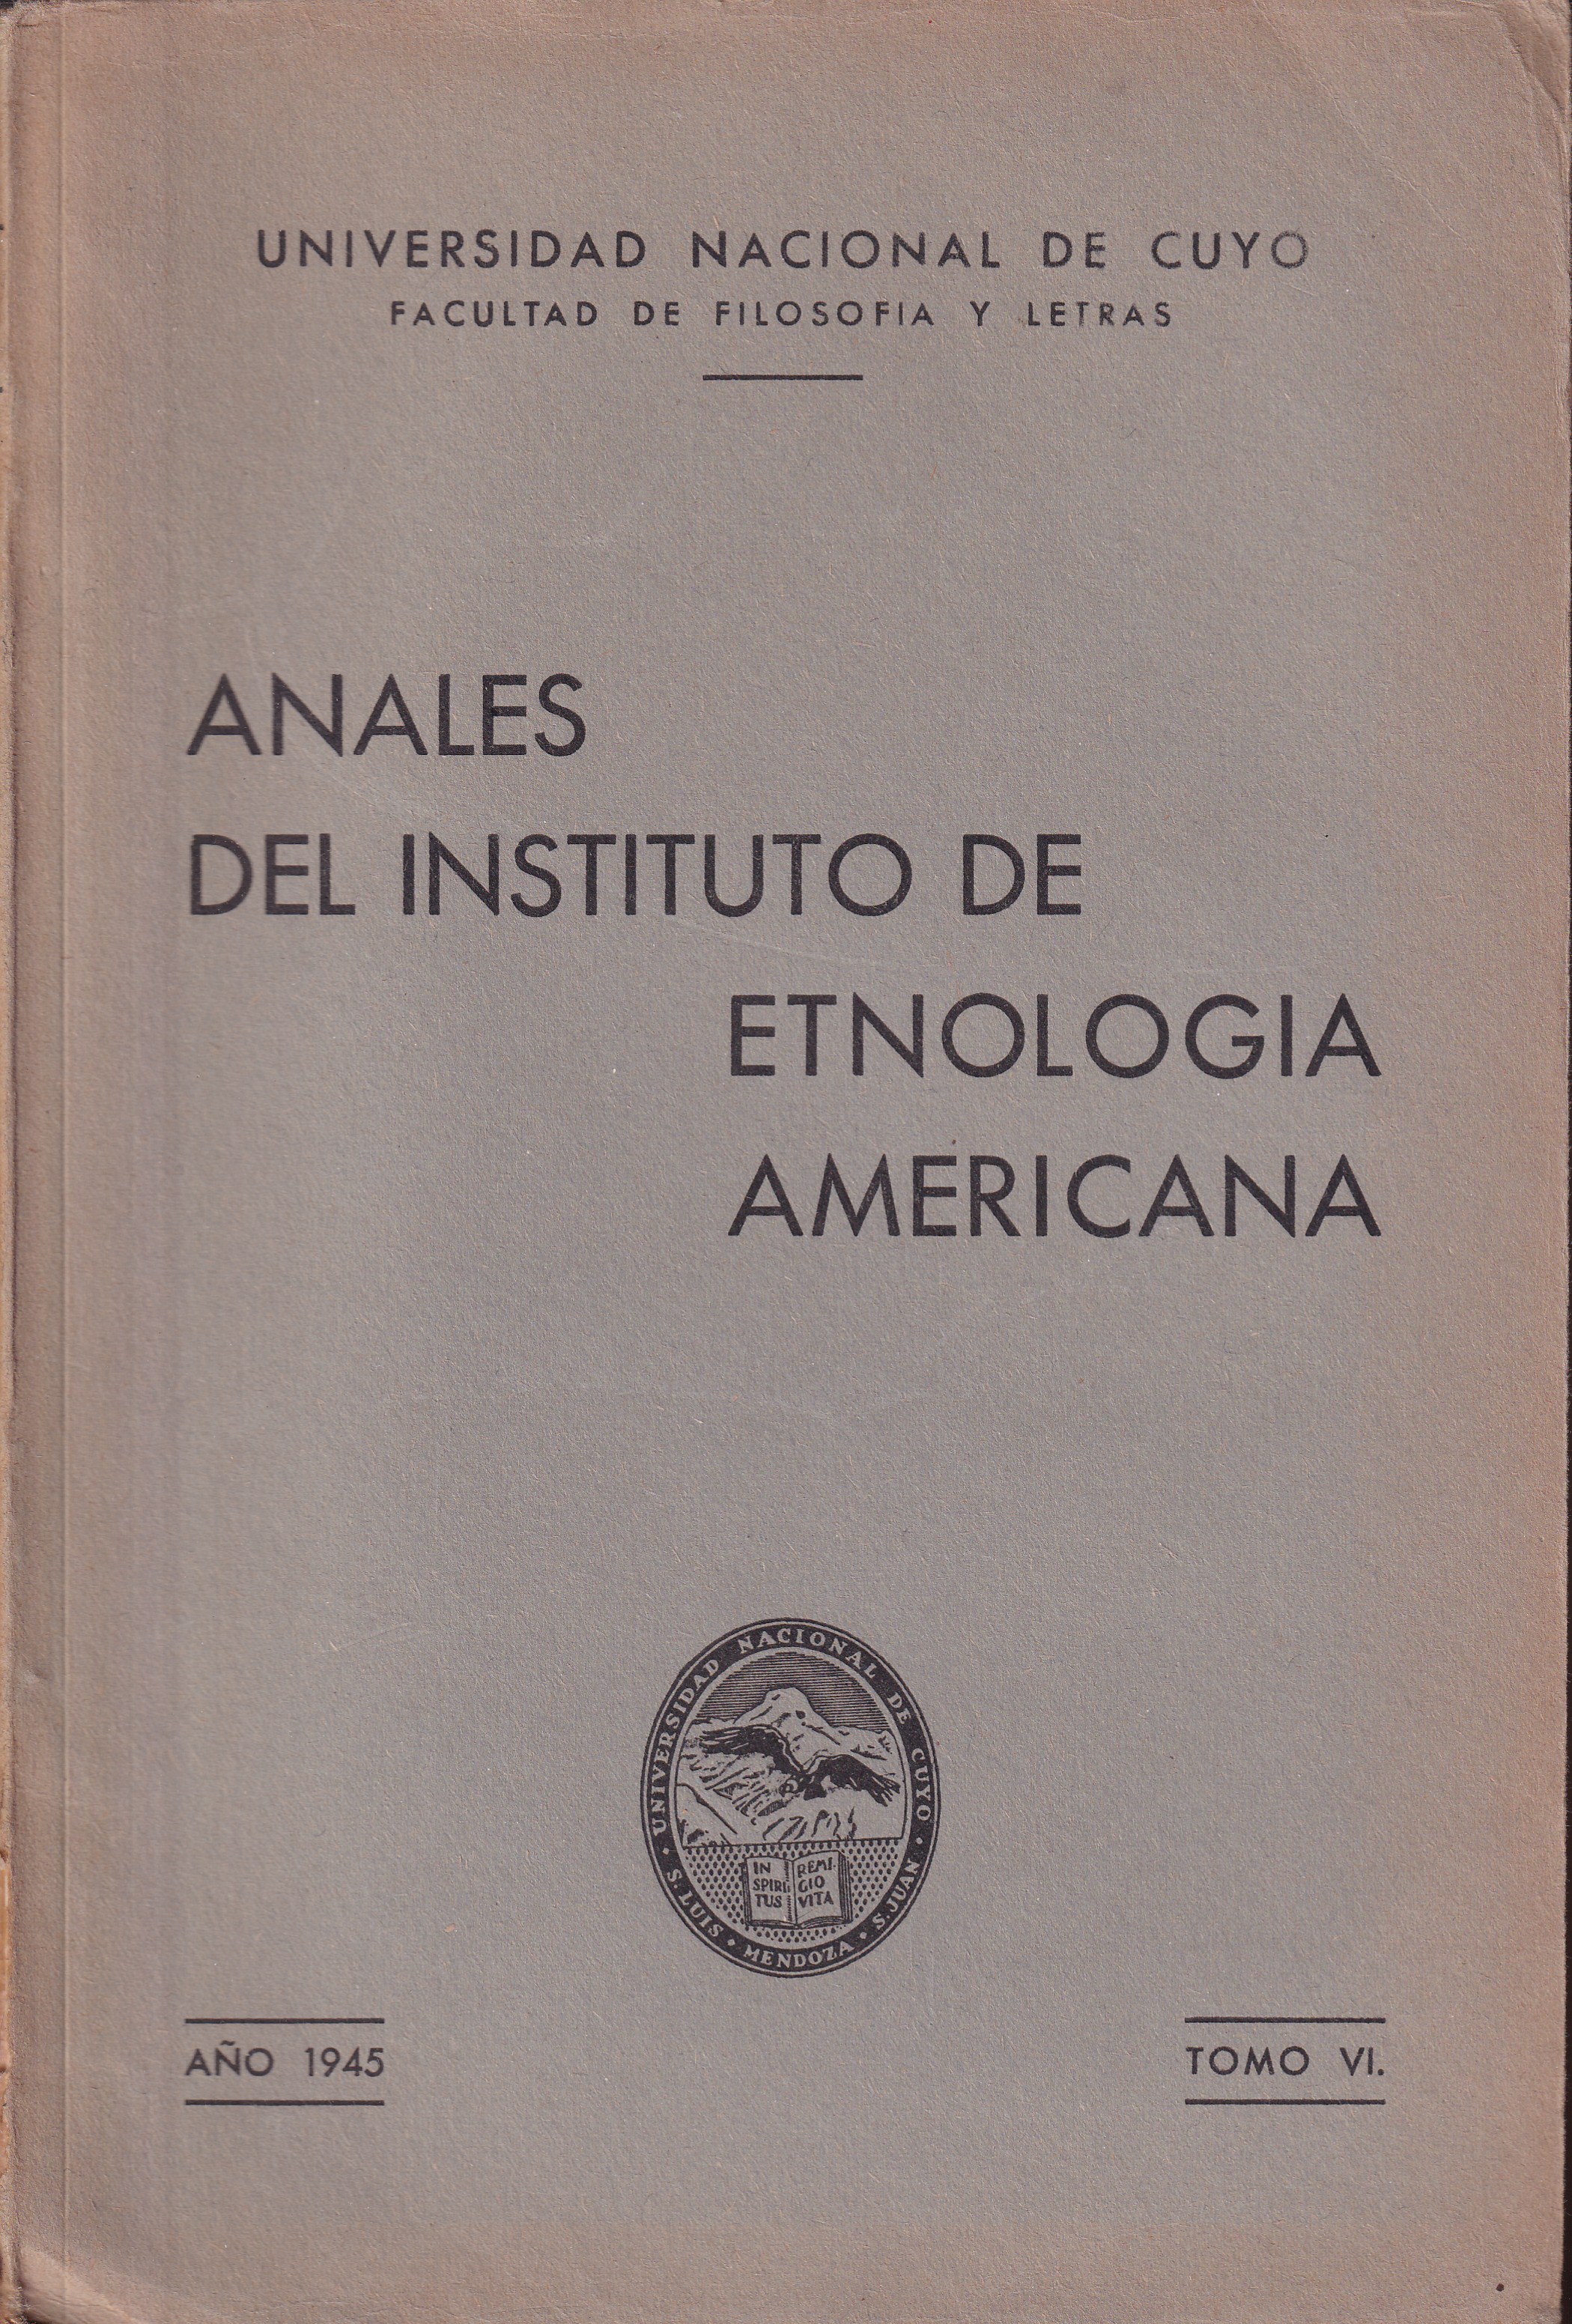 Universidad Nacional de Cuyo  Anales del Instituto de Etnologia Americana Tomo VI. Ano 1945 